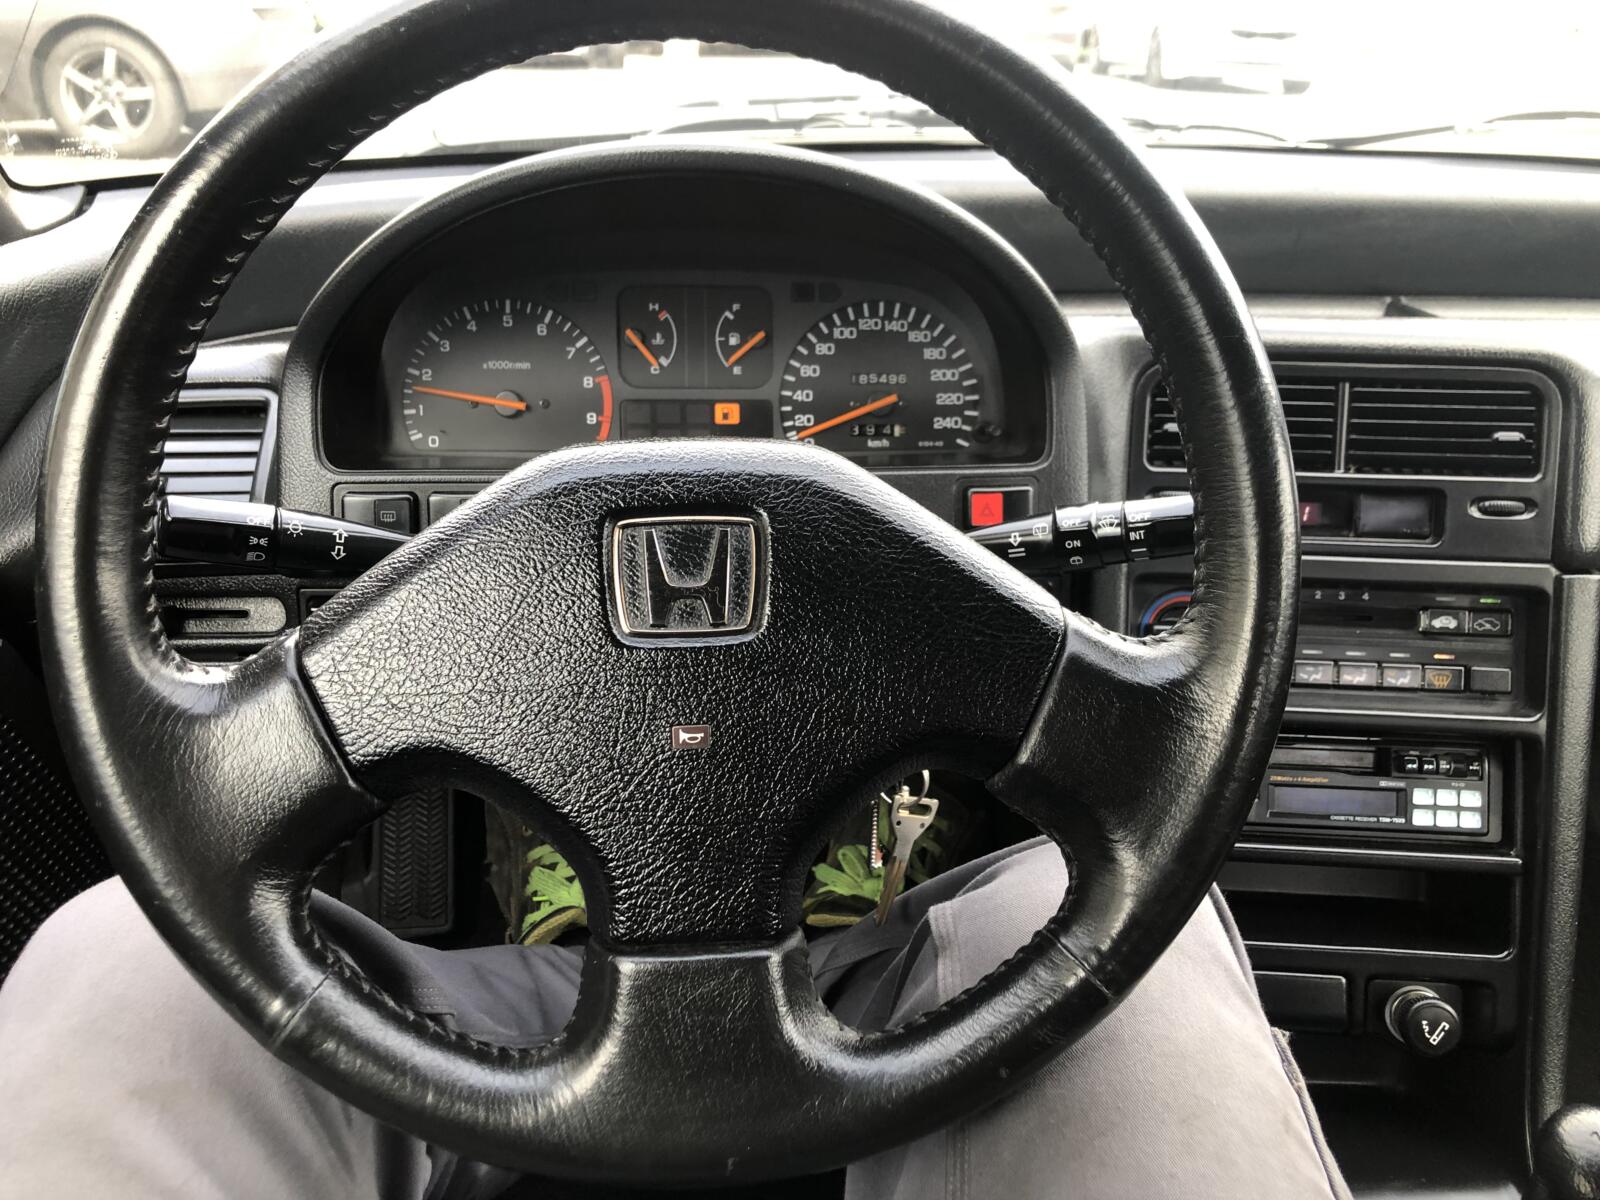 Honda CRX 1.6i VTEC